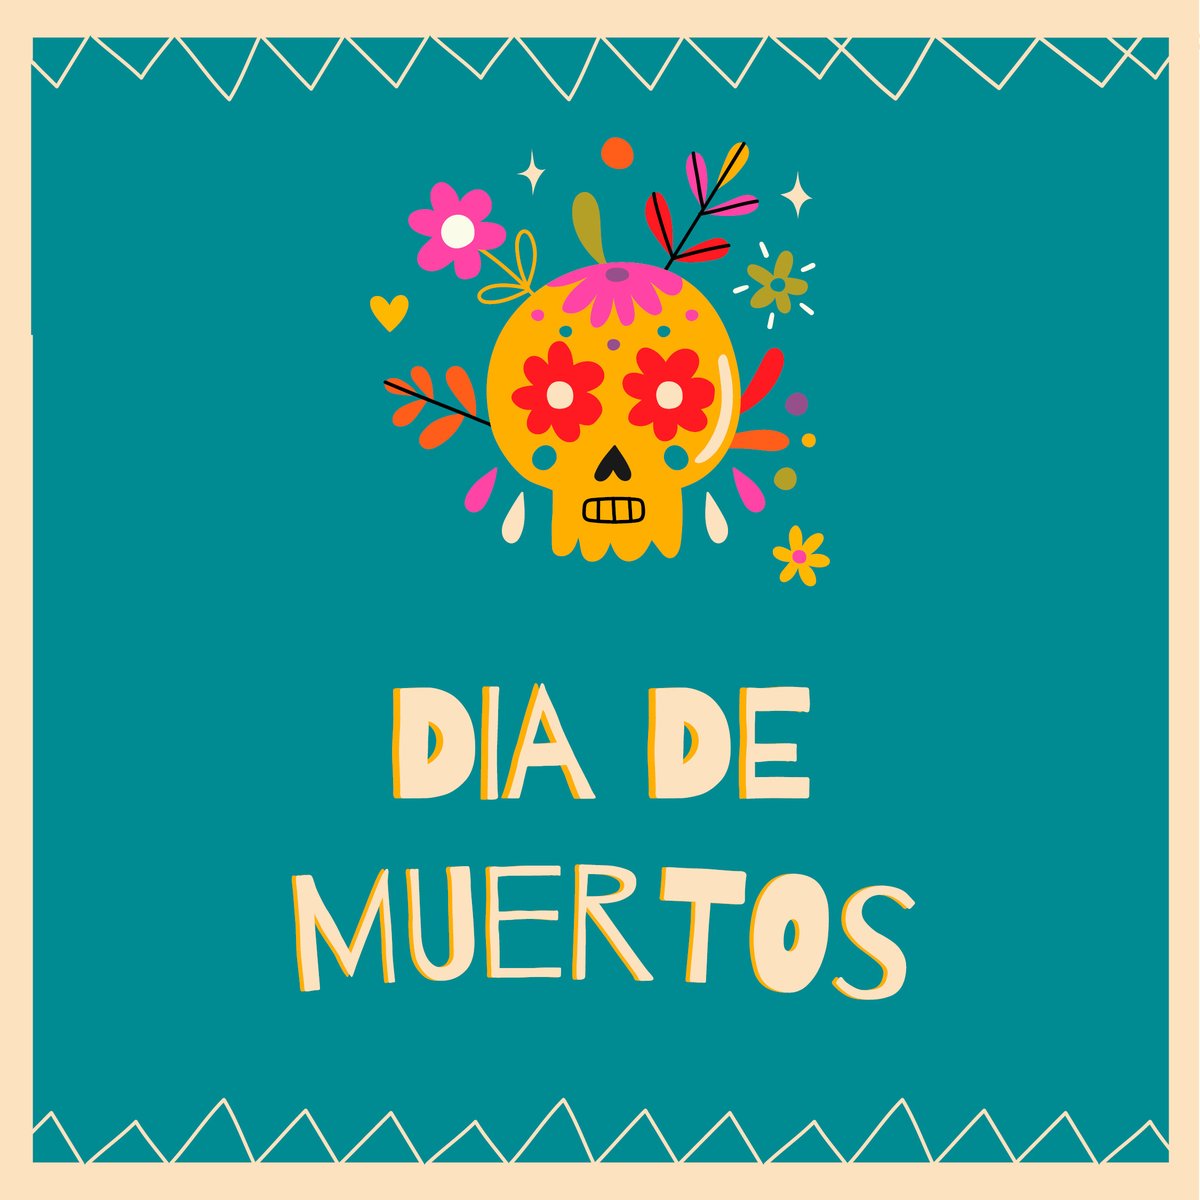 Dia de los muertos, c''est l'occasion pour les mexicains de se réunir dans la joie, les couleurs, la danse et la musique pour se souvenir de leurs ancêtres et de leurs êtres chers.
#diademuertos #culturemexicaine #mexicangourmet #recuerdos #tradition